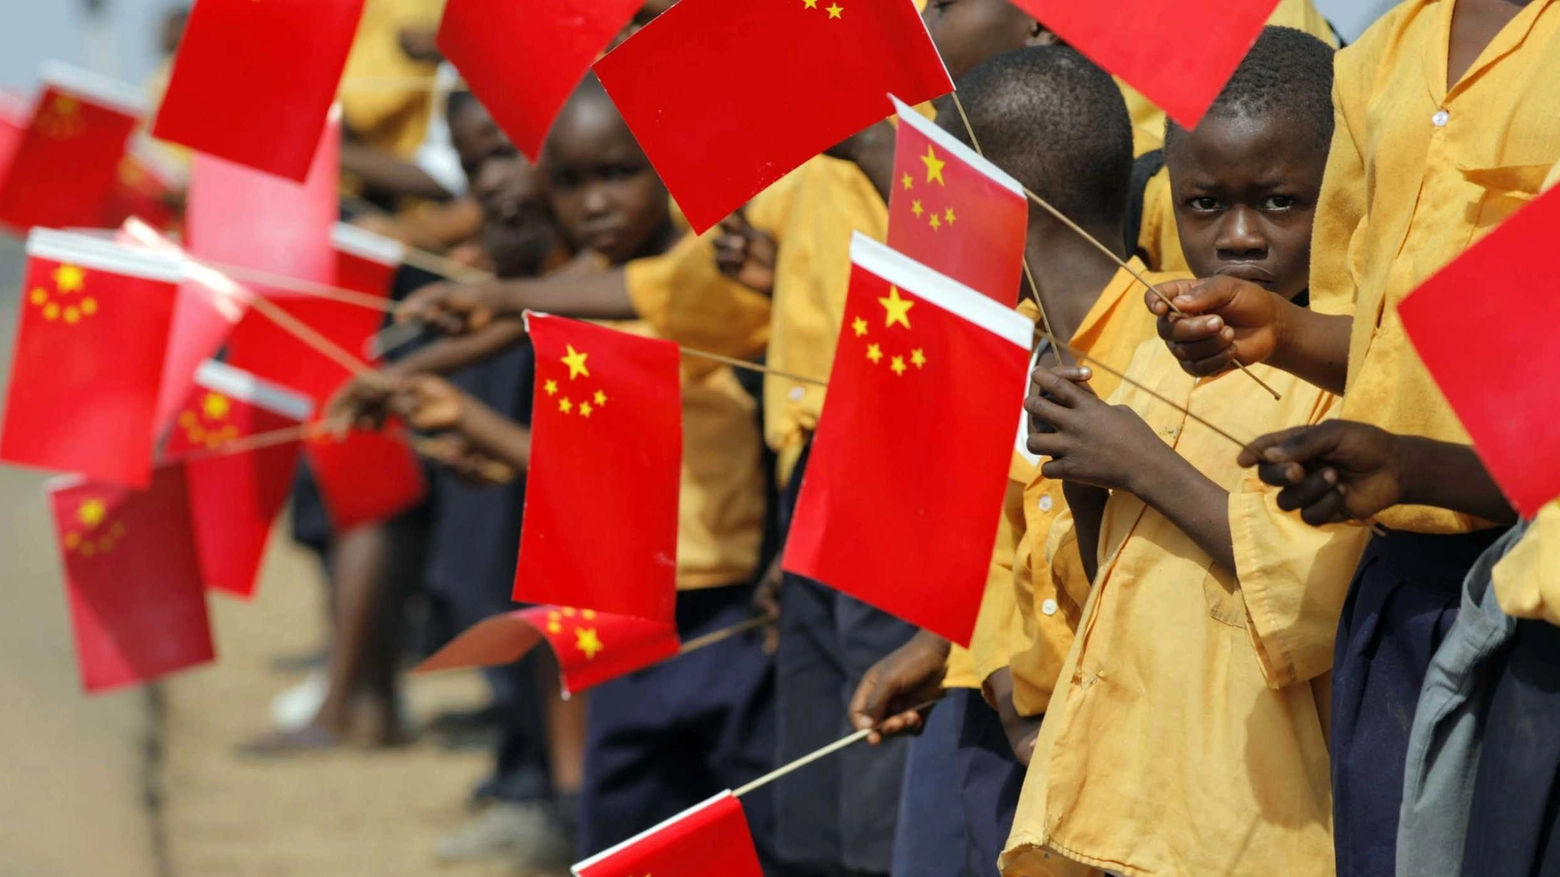 Bambini africani con le bandierine della Cina